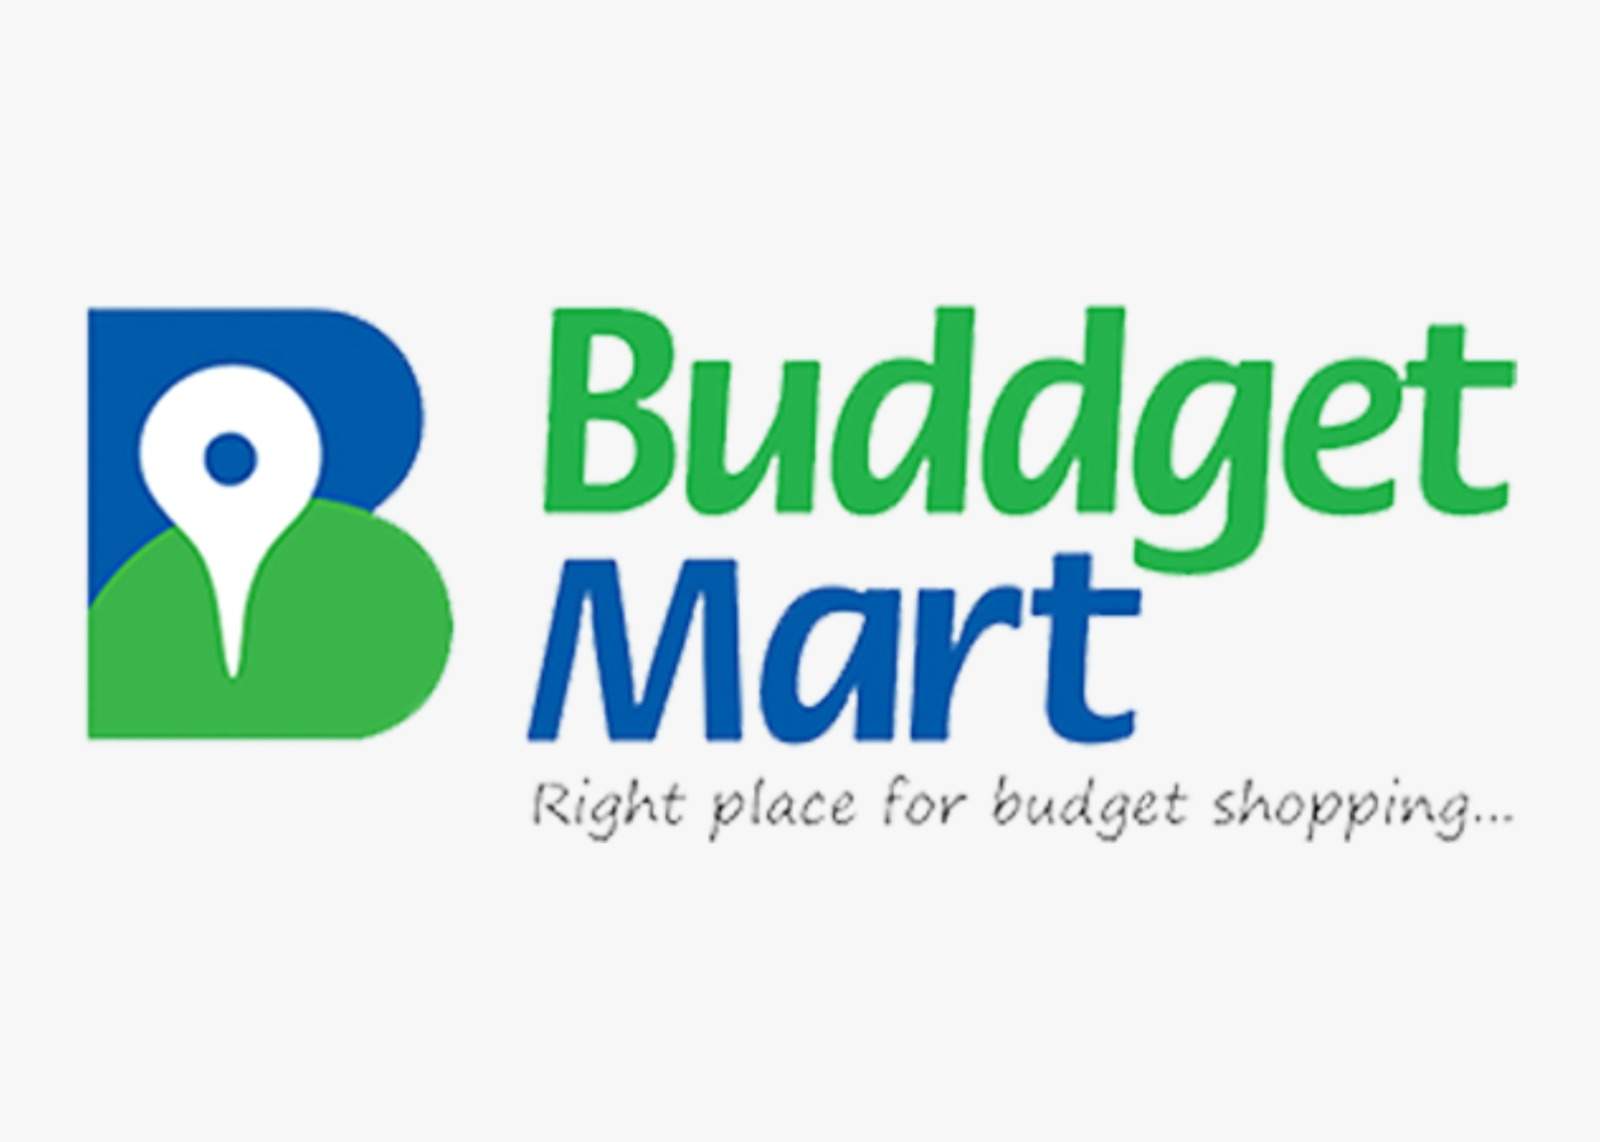 Buddgte-Mart-ClintS-Logos-Codestrela